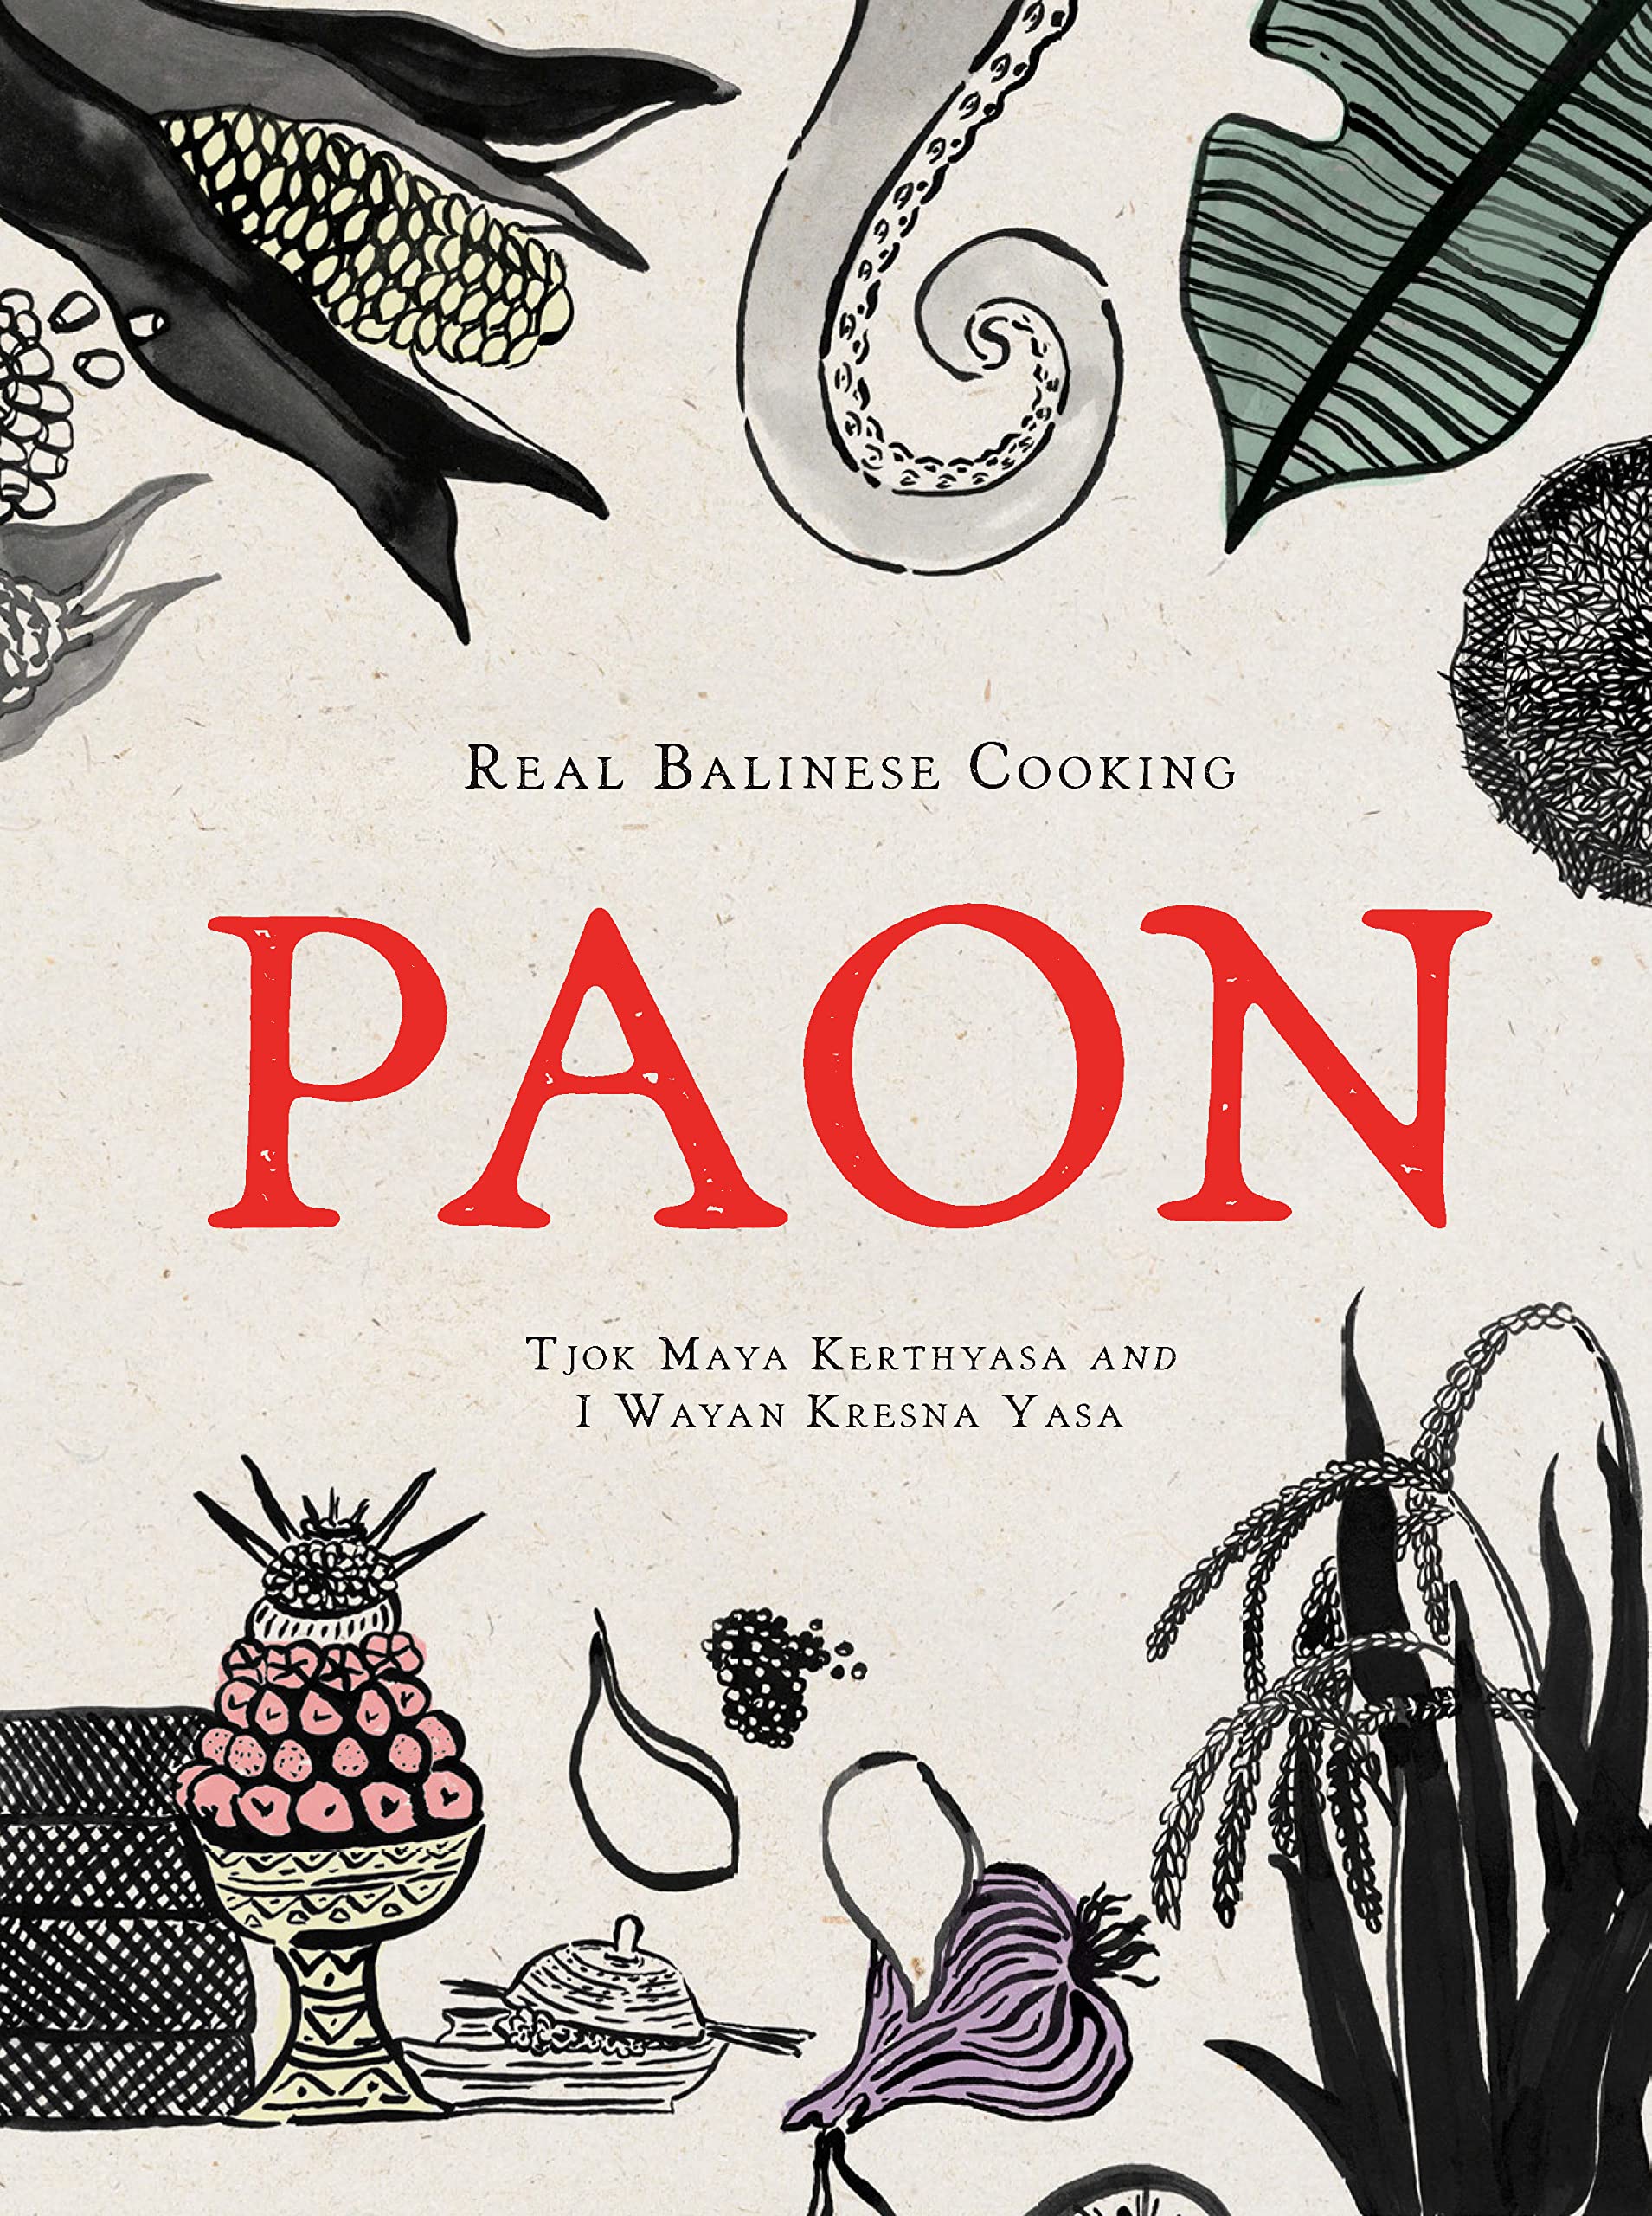 Paon: Real Balinese Cooking (Tjok Maya Kerthyasa, I Wayan Kresna Yasa)